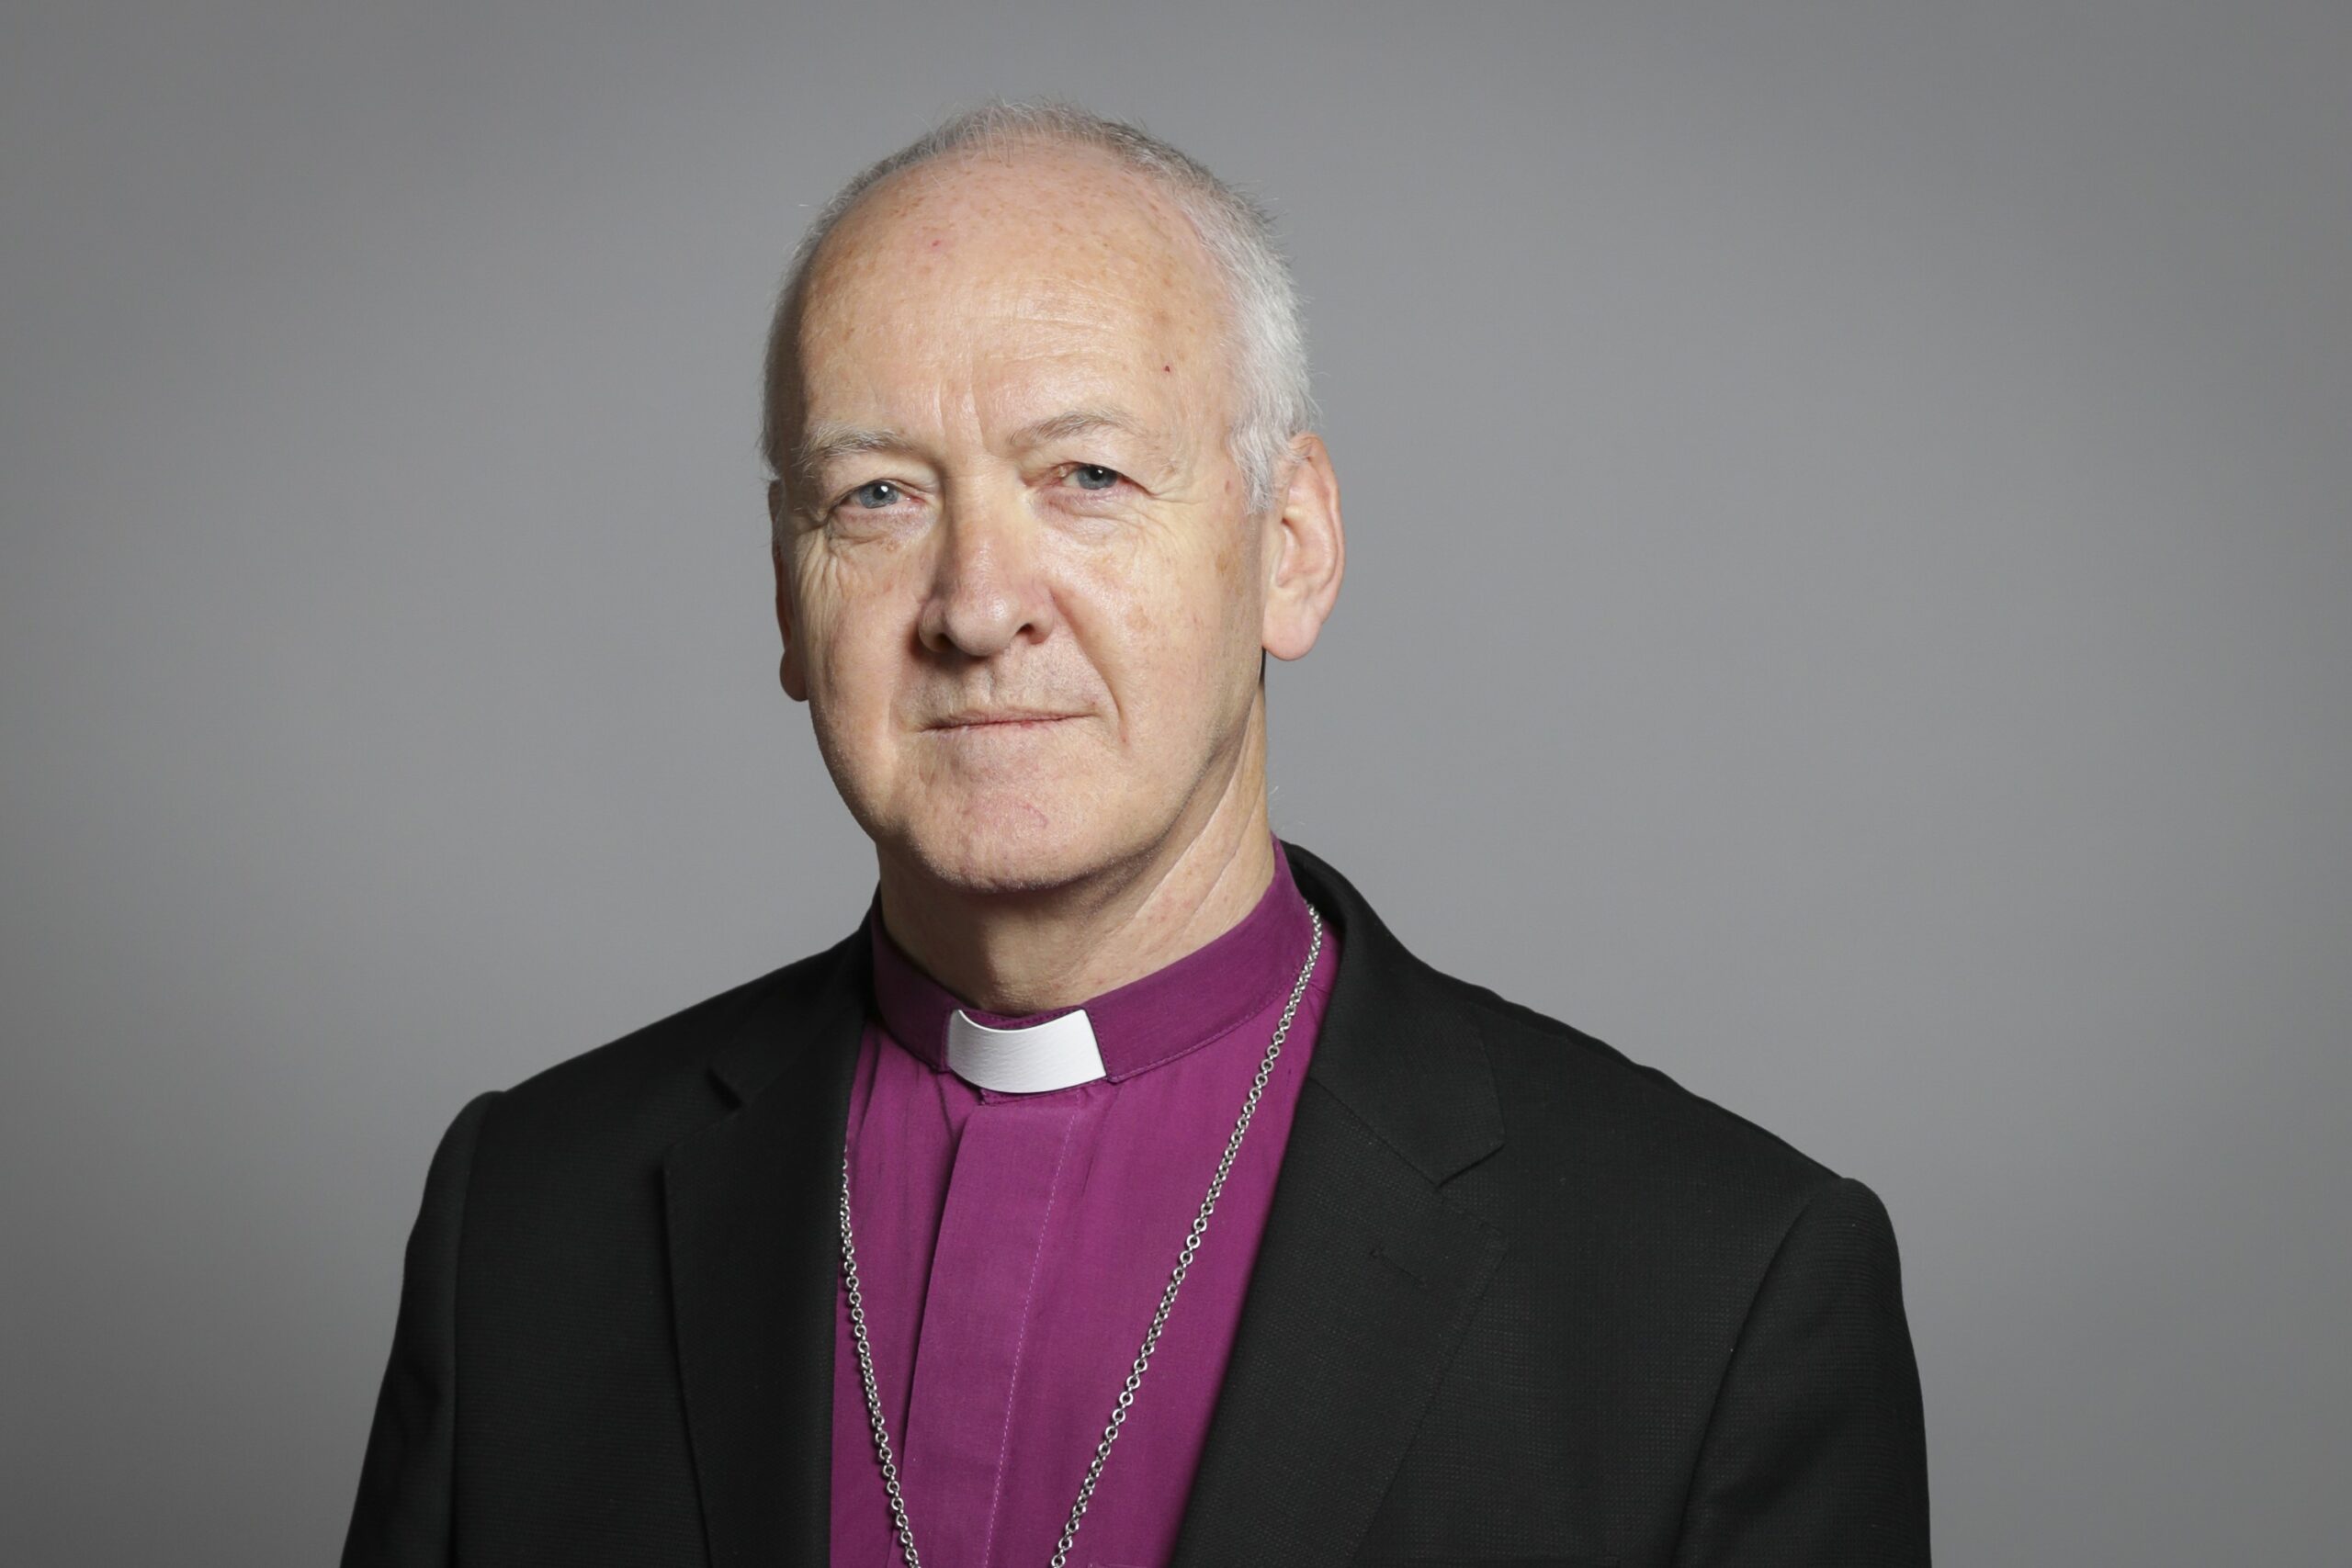 The Bishop of Leeds